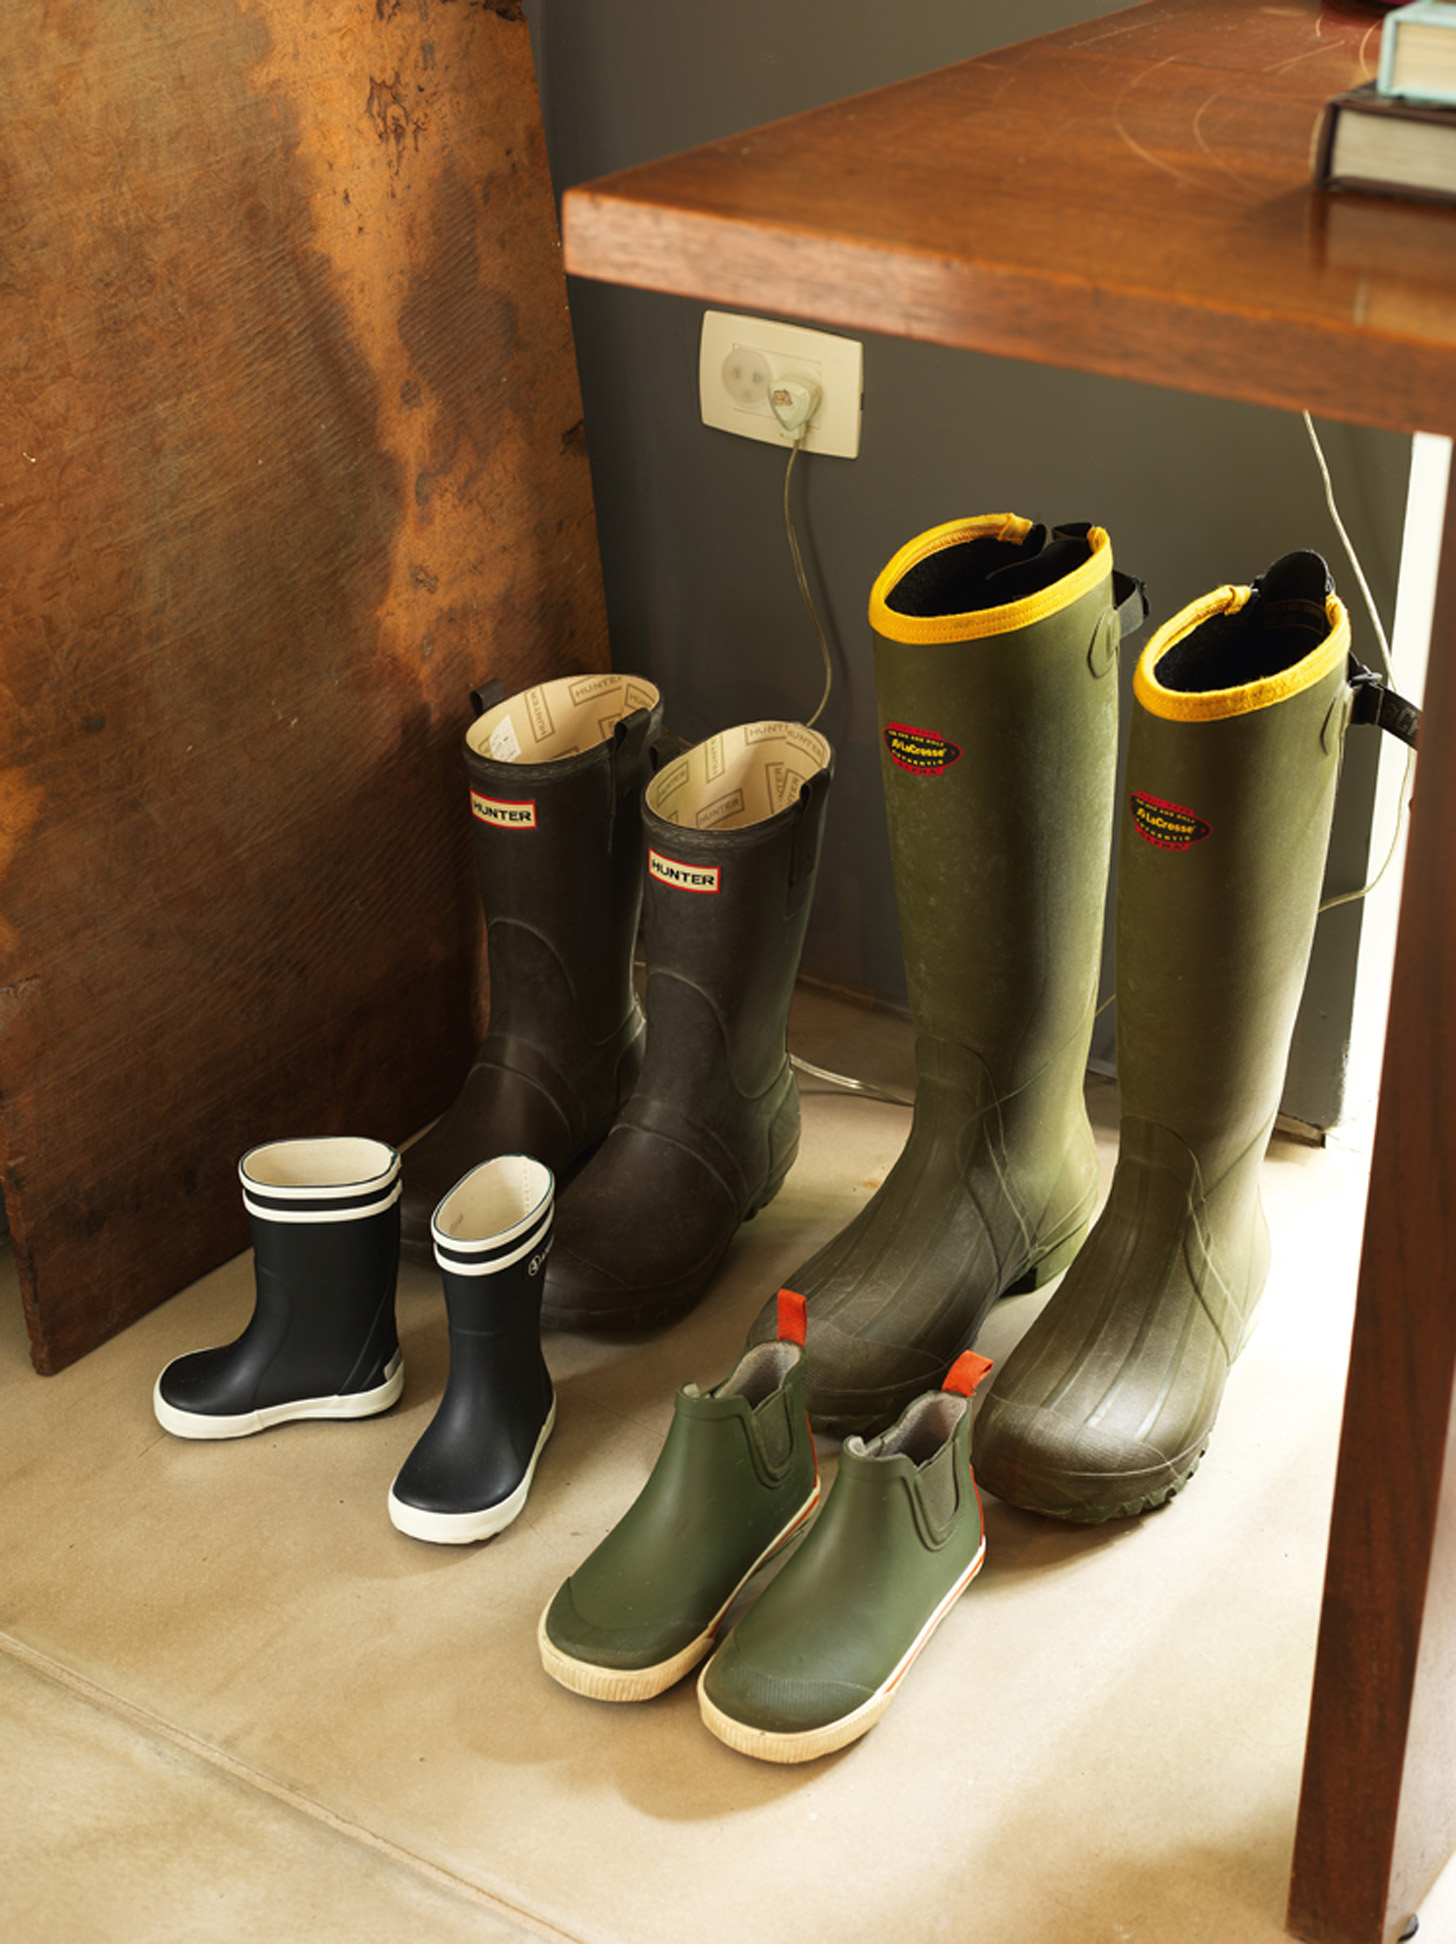 Galochas: Detalhe das botas dos moradores da casa, usadas em dias de chuva